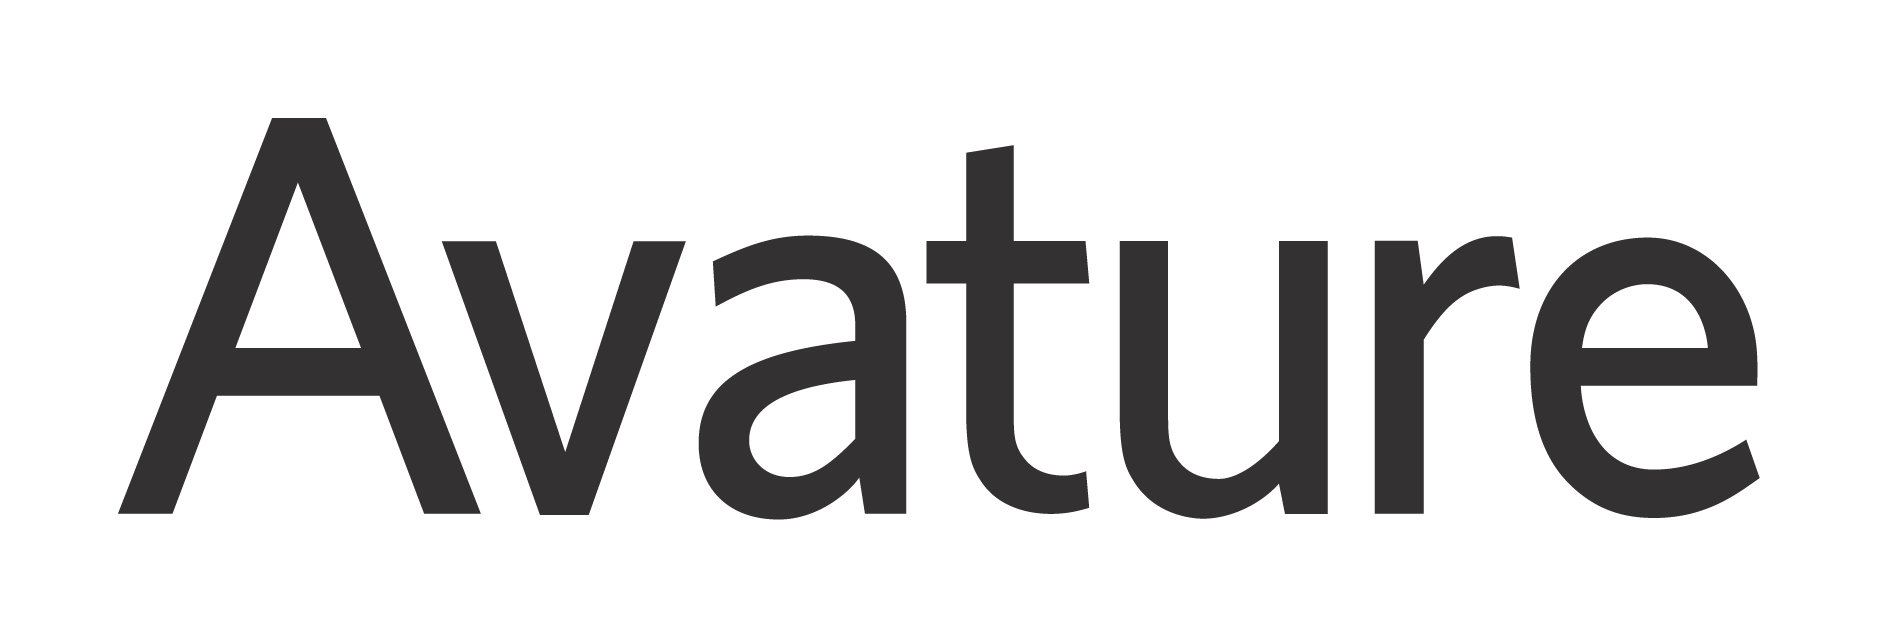 Avature-logo